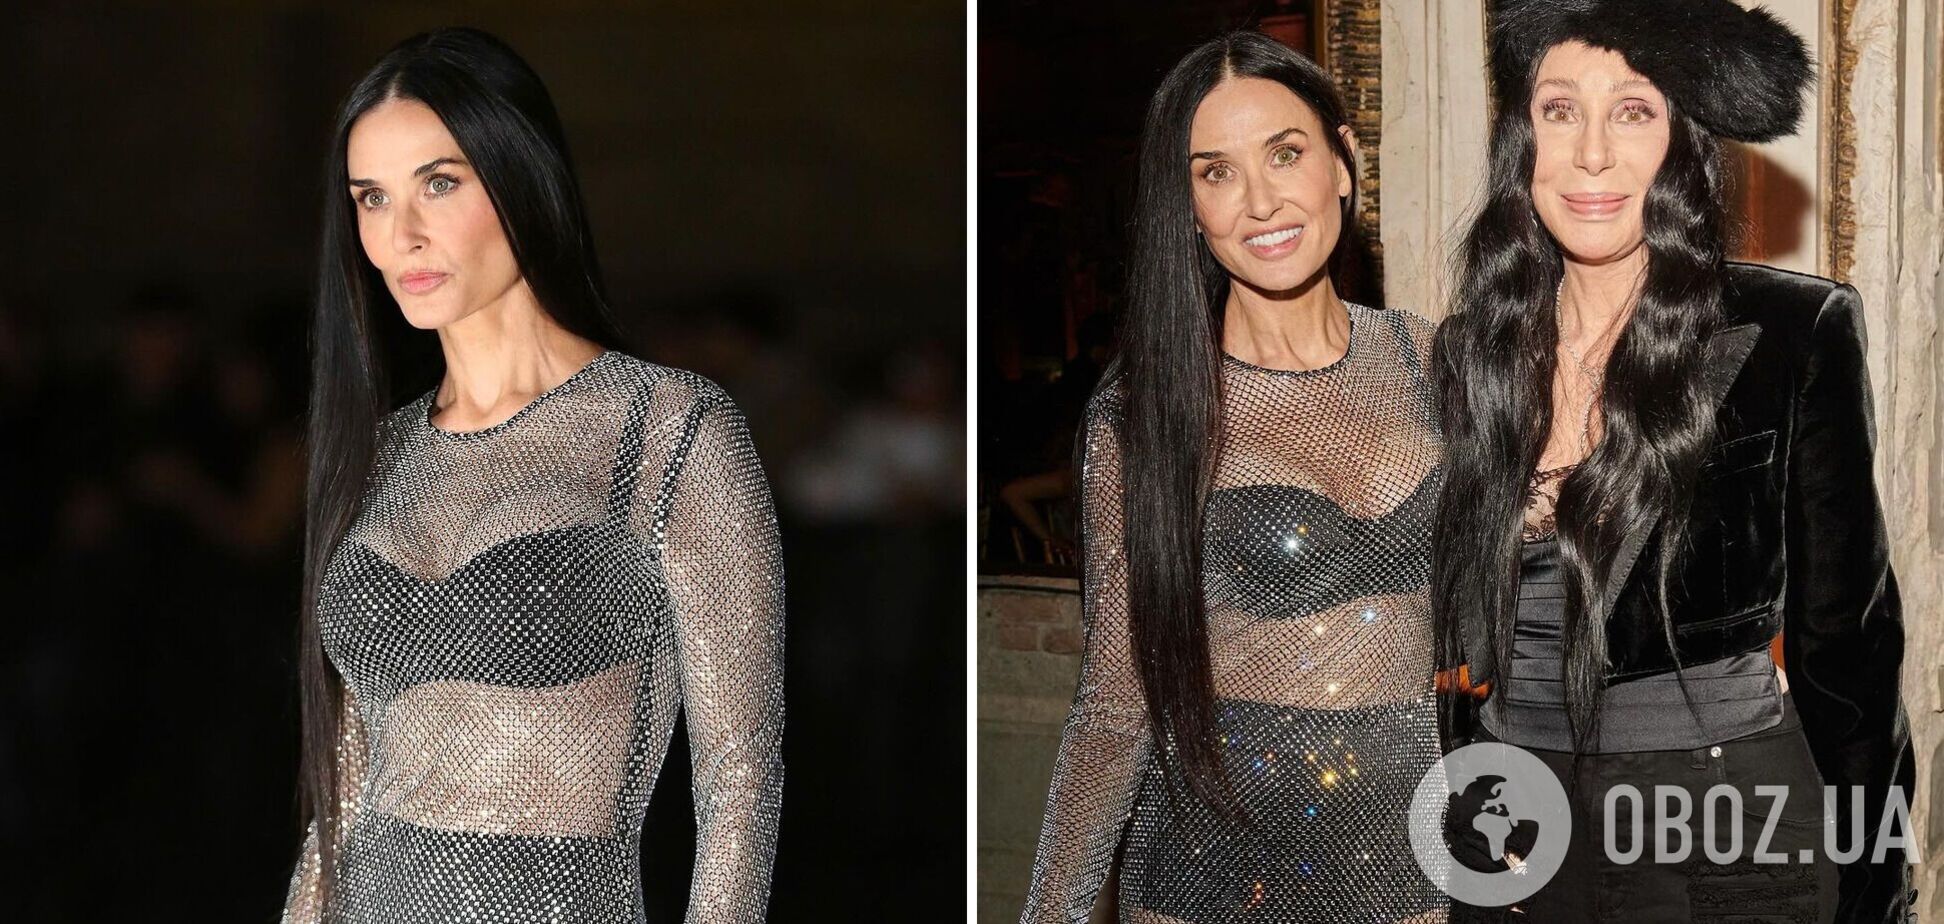 Деми Мур пришла на вечеринку Dolce & Gabbana в прозрачном платье с блестками: фигура 61-летней актрисы поразила всех